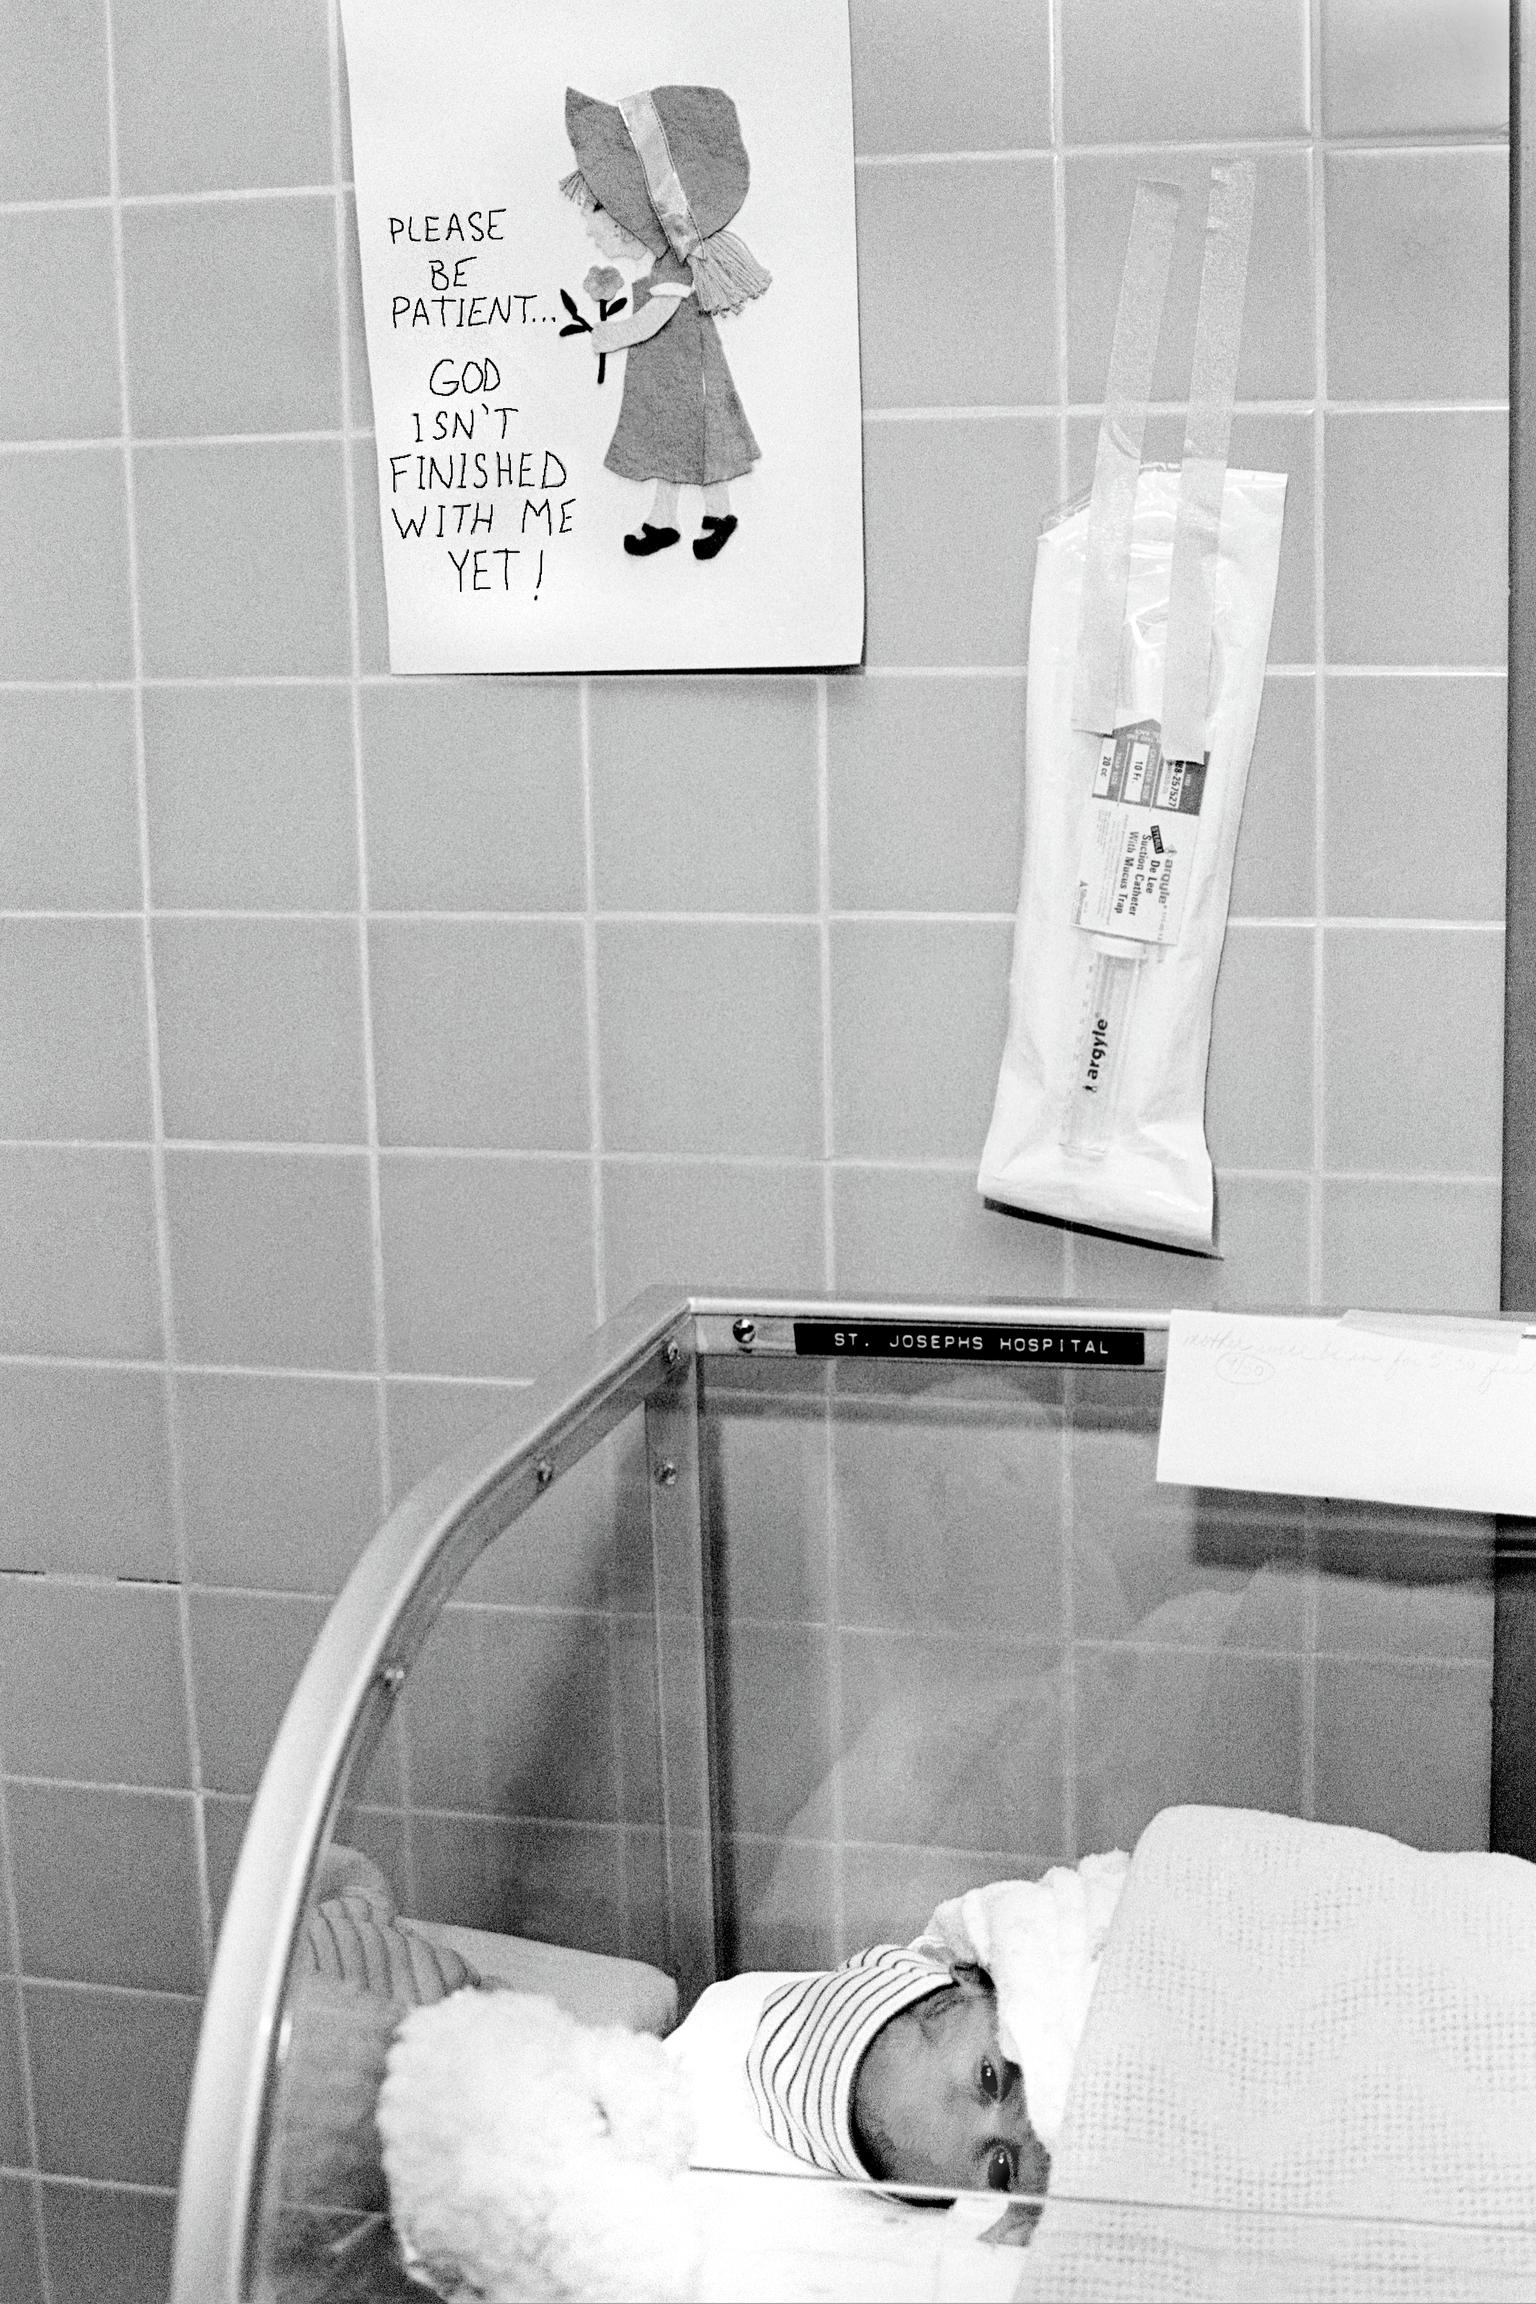 Preemie Baby unit at St Joseph's Hospital. On the road to recovery. Phoenix, Arizona USA